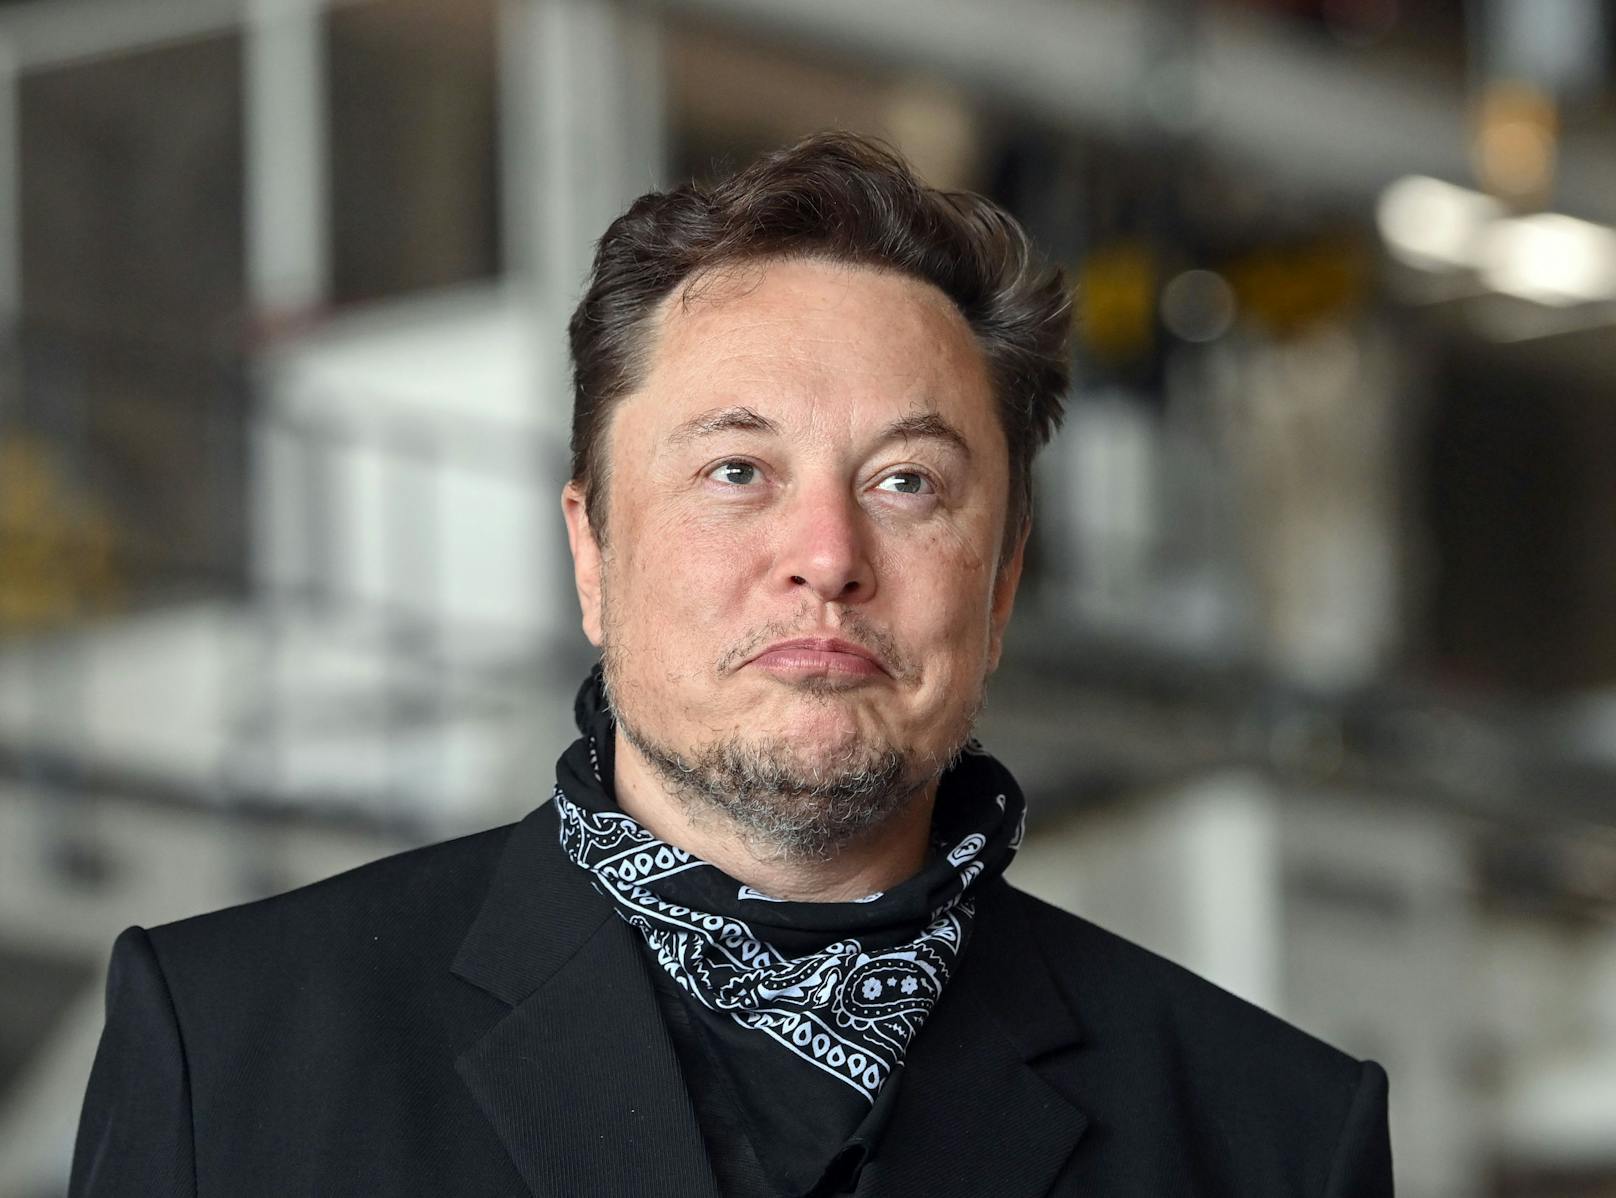 "Time"-Magazin kürt Elon Musk zur Person des Jahres